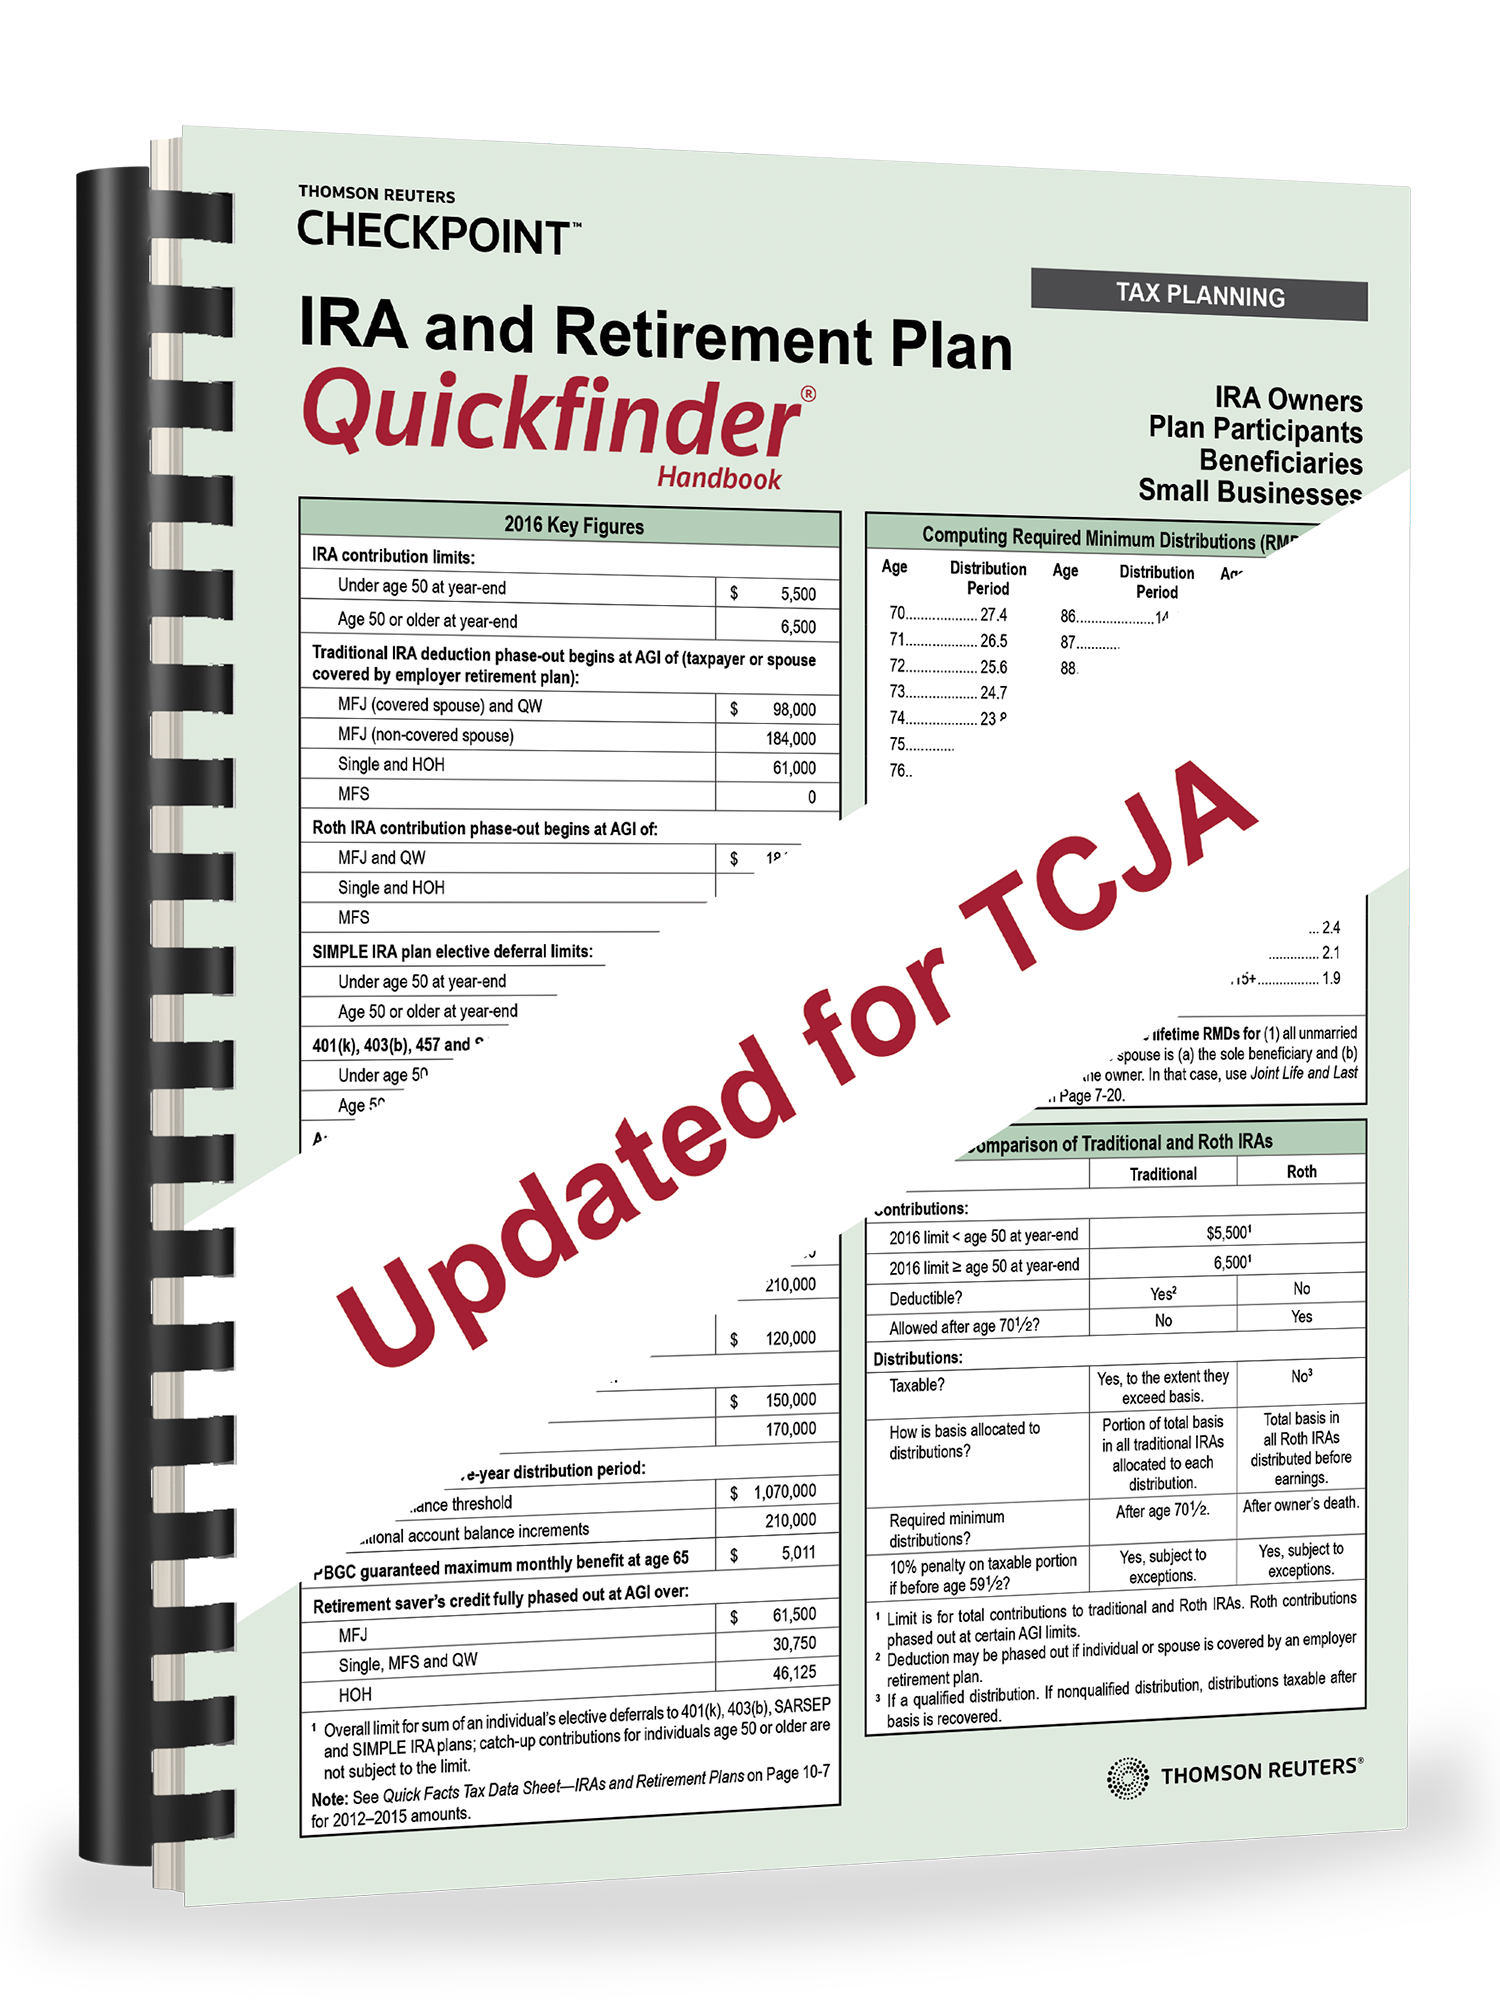 IRA and Retirement Plan Quickfinder Handbook (2018) – #3818 